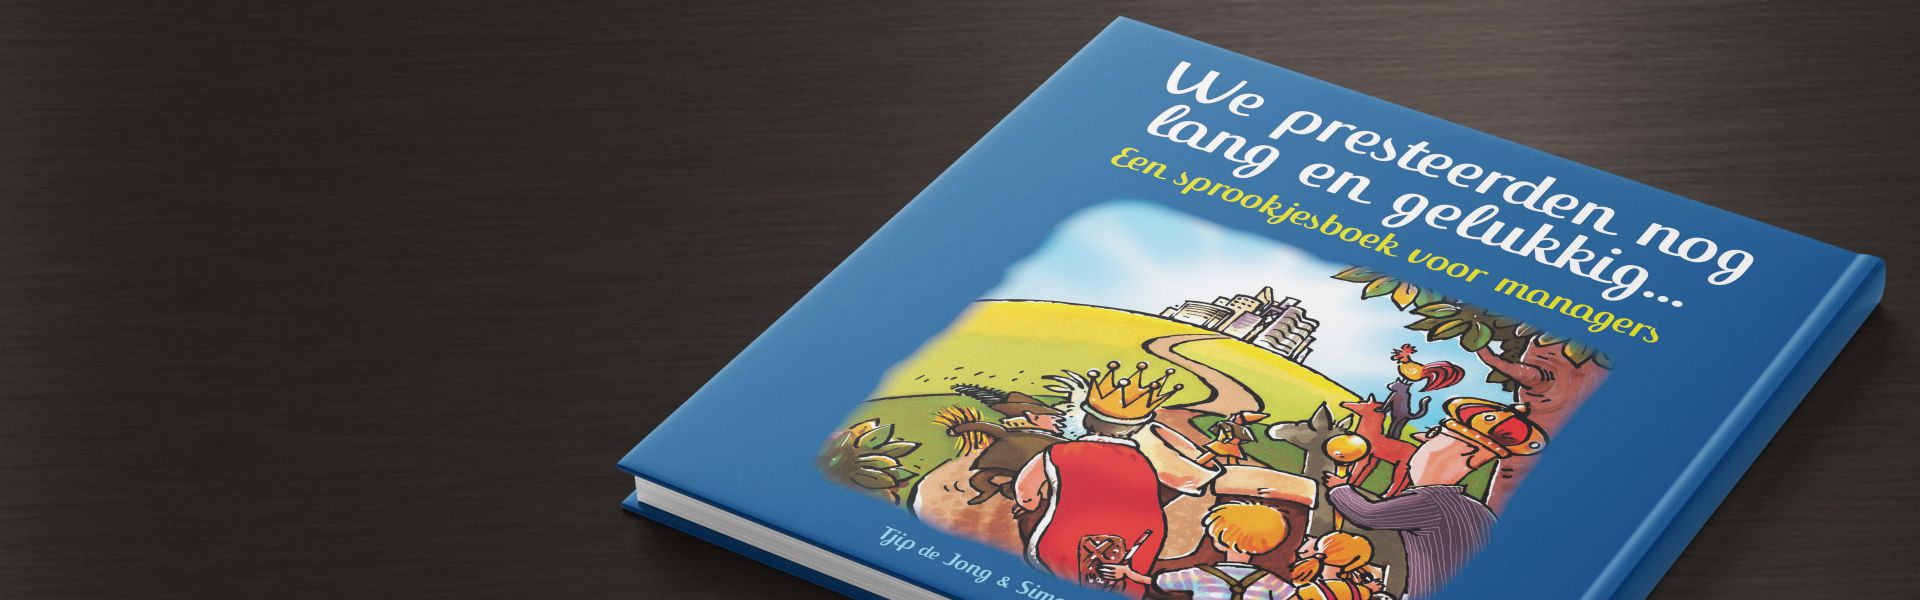 We presteerden nog lang en gelukkig: een sprookjesboek voor managers